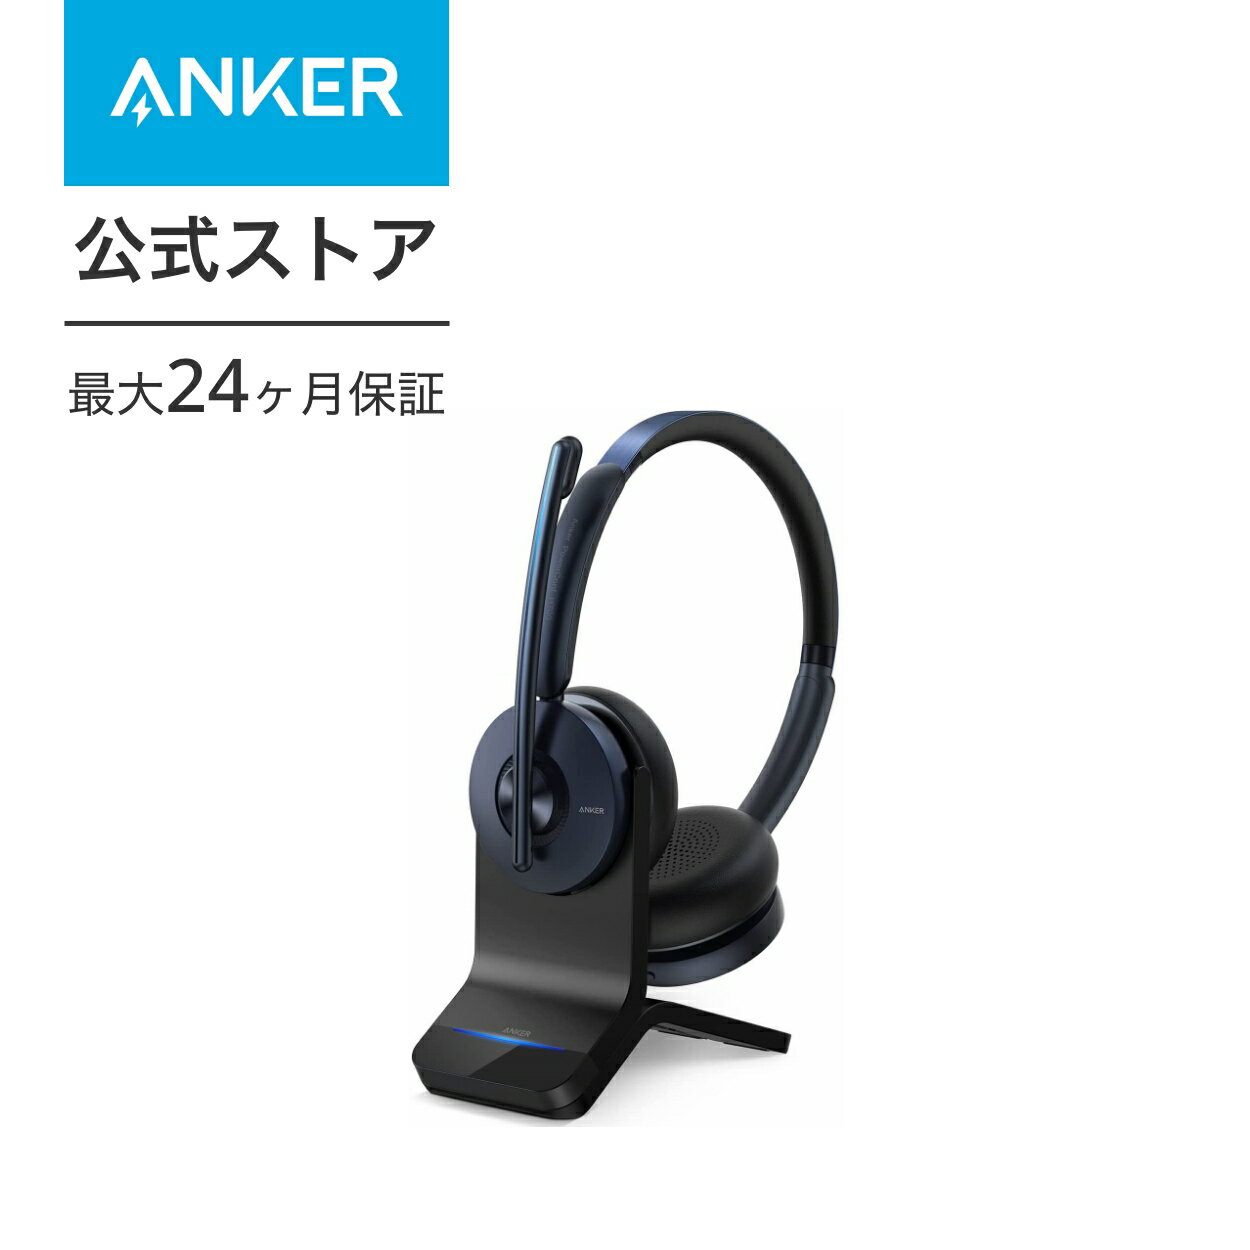 【6/1限定 最大10%OFFクーポン】【あす楽対応】Anker PowerConf H700 ワイヤレスヘッドセット Bluetooth 5.0 充電スタンド付属【パソコン用 / Web会議 / 通話ノイズリダクション / マイク搭載 …